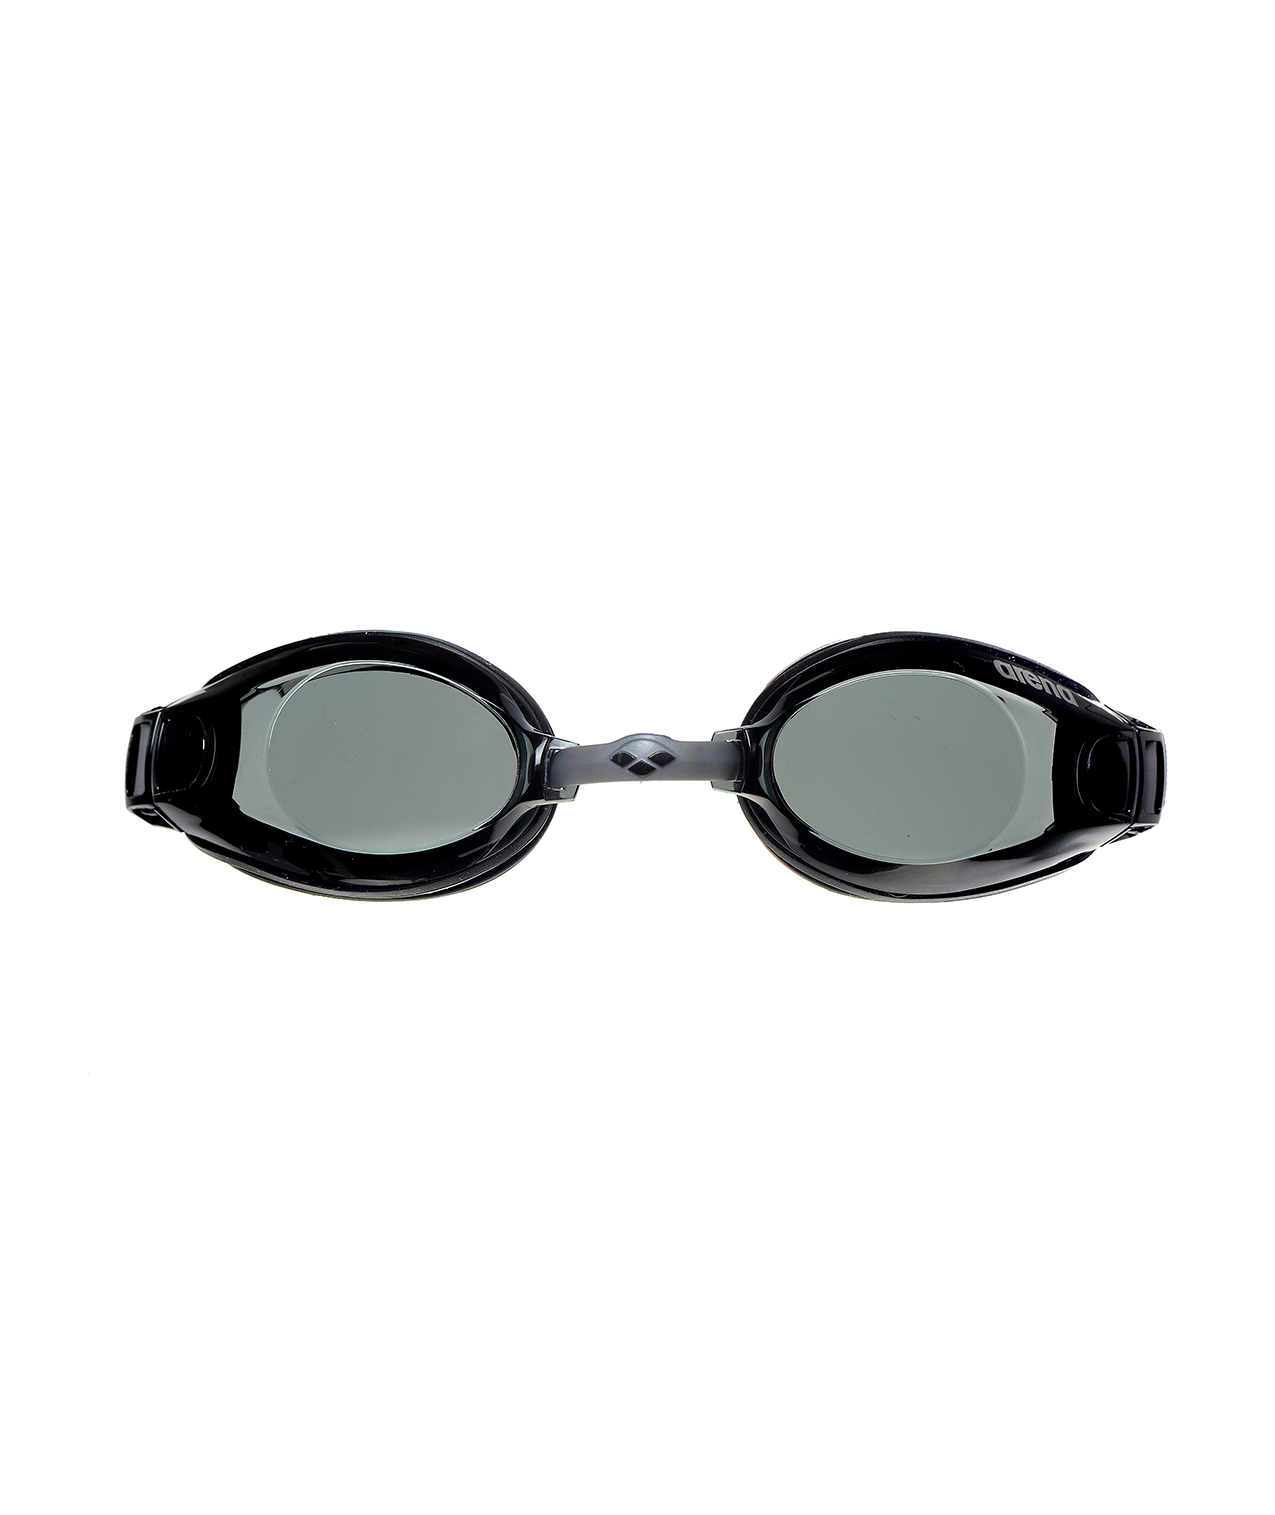 Gafas natación X Ceed Negro